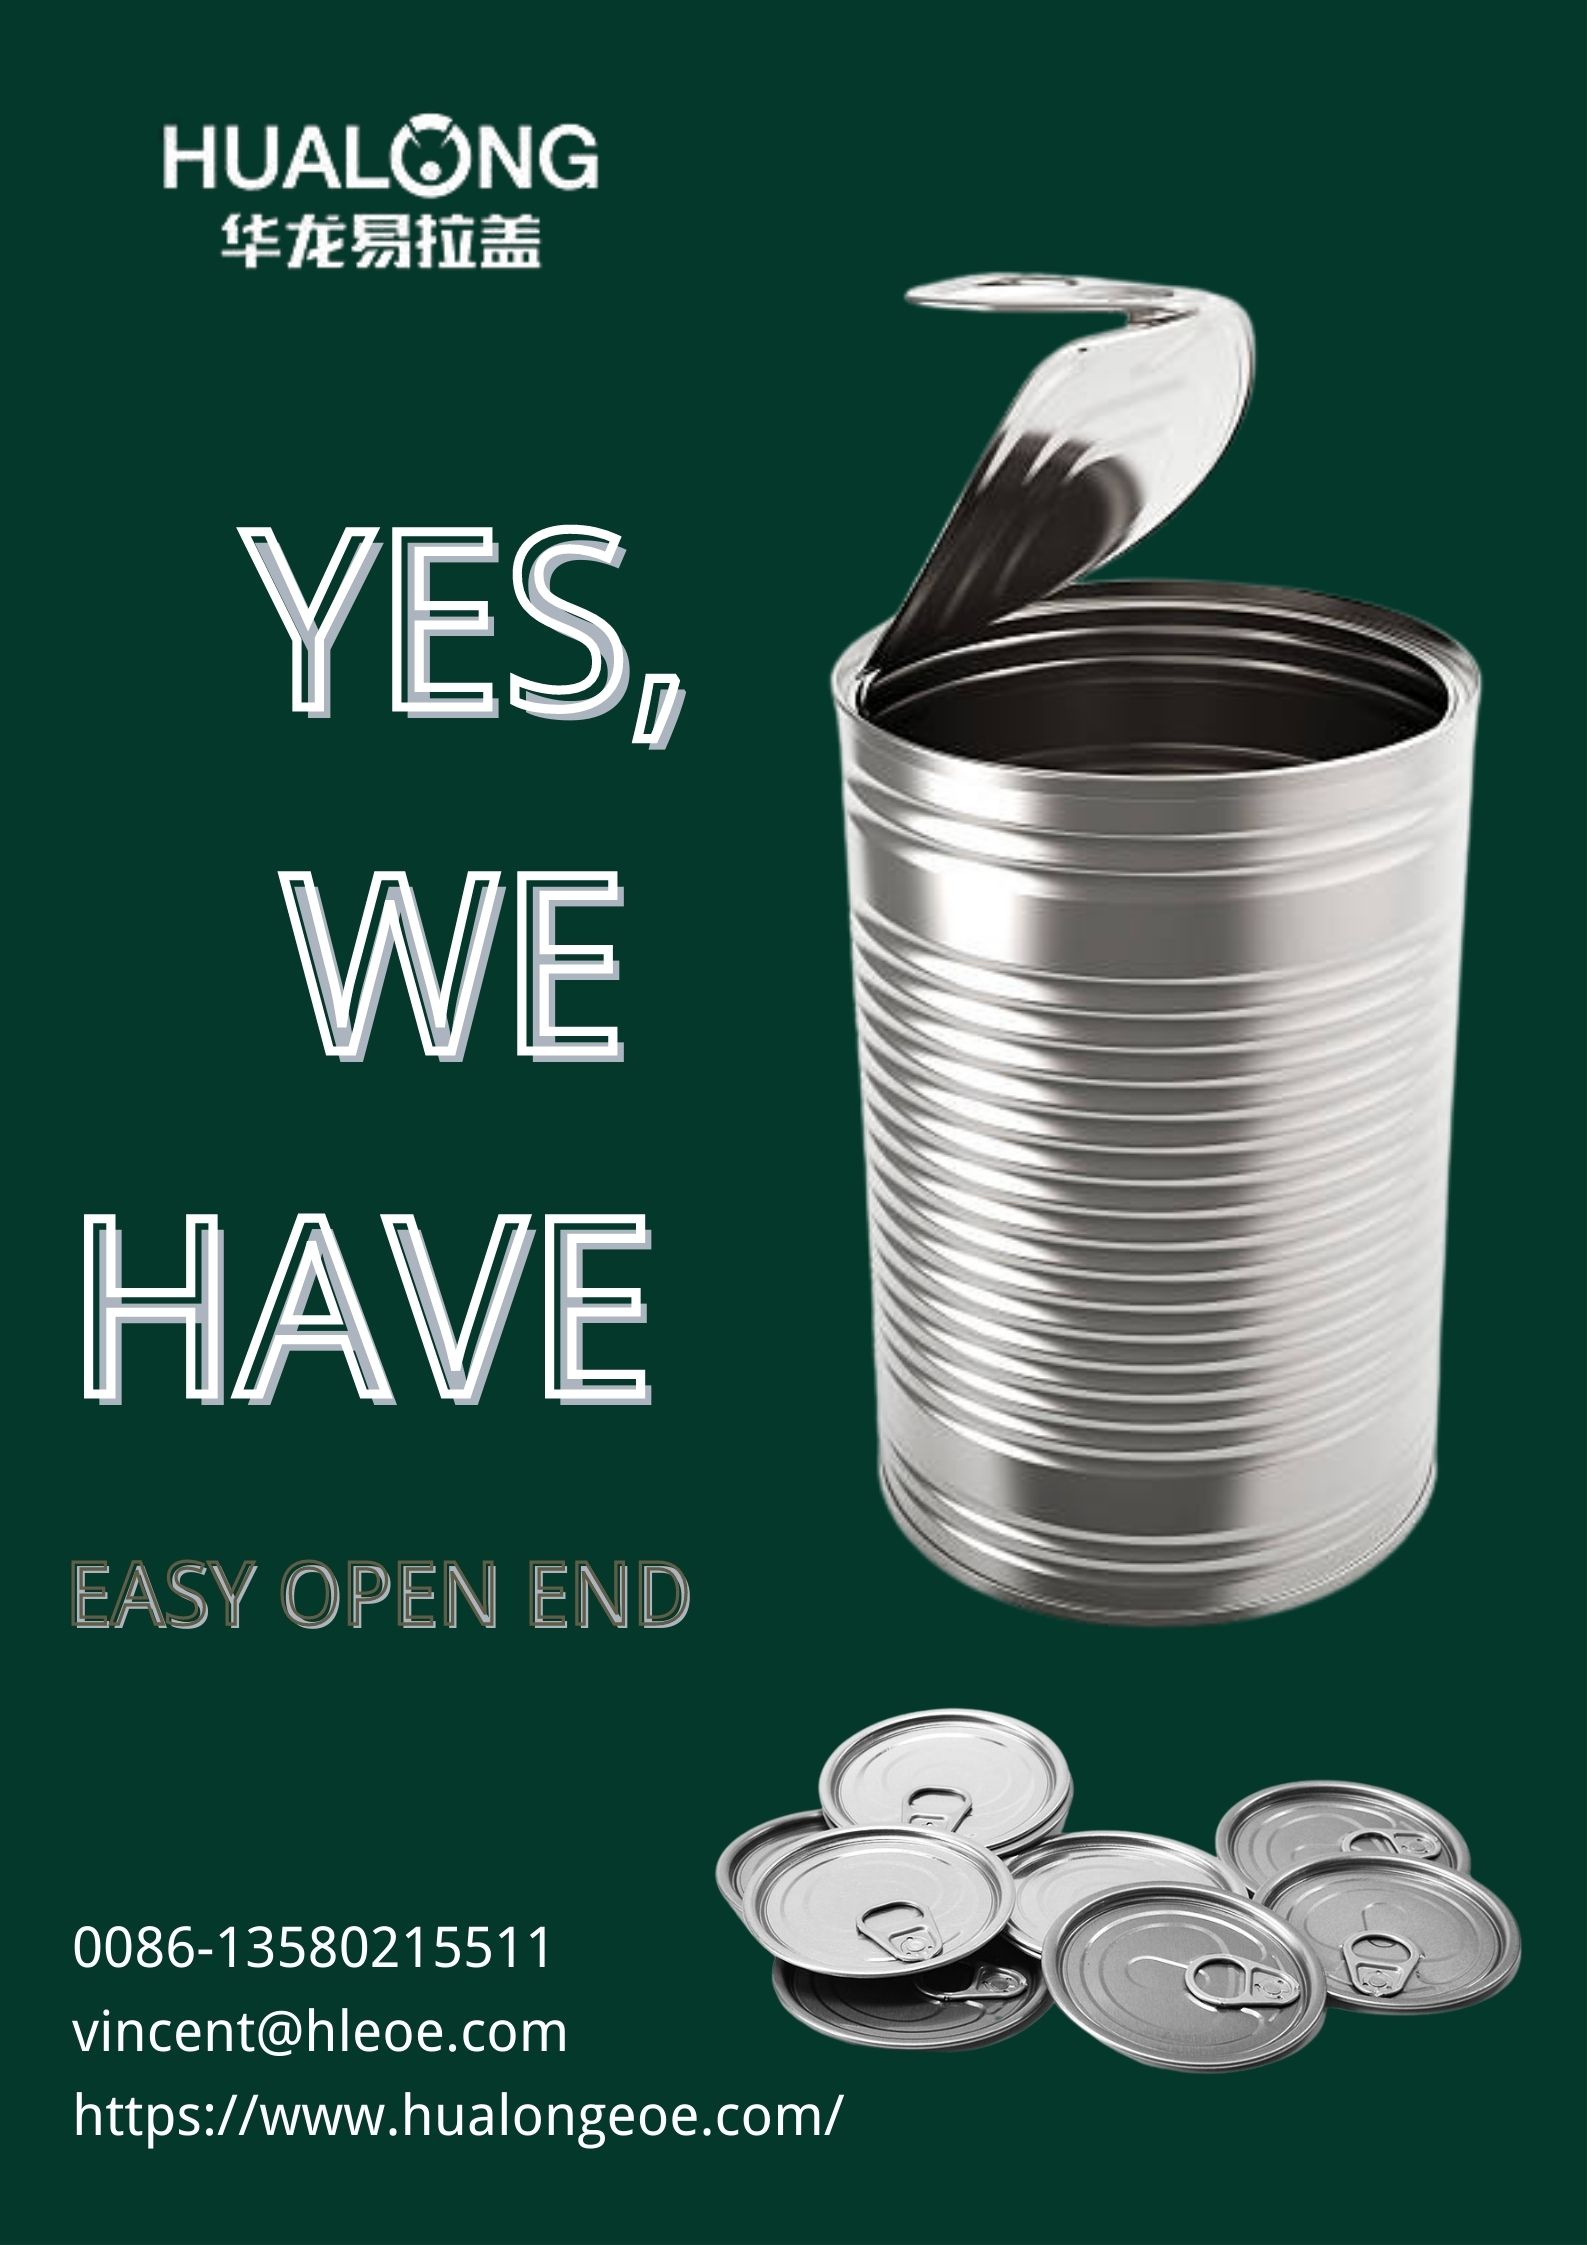 Hualong EOE: Hogyan lehet helyesen újrahasznosítani az Easy Open Endet?